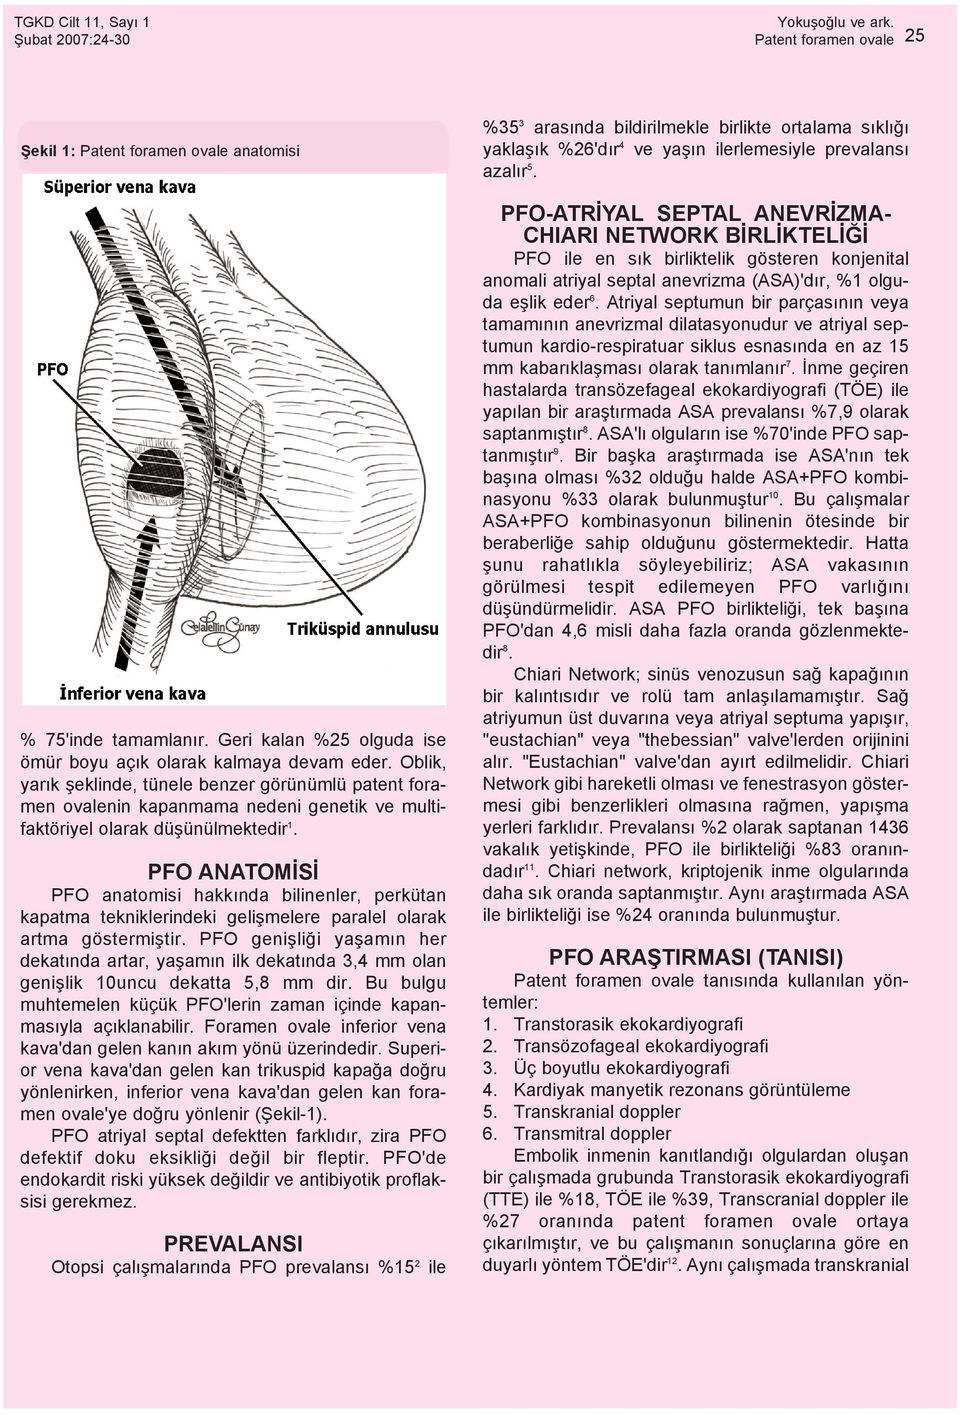 PFO ANATOMÝSÝ PFO anatomisi hakkýnda bilinenler, perkütan kapatma tekniklerindeki geliþmelere paralel olarak artma göstermiþtir.